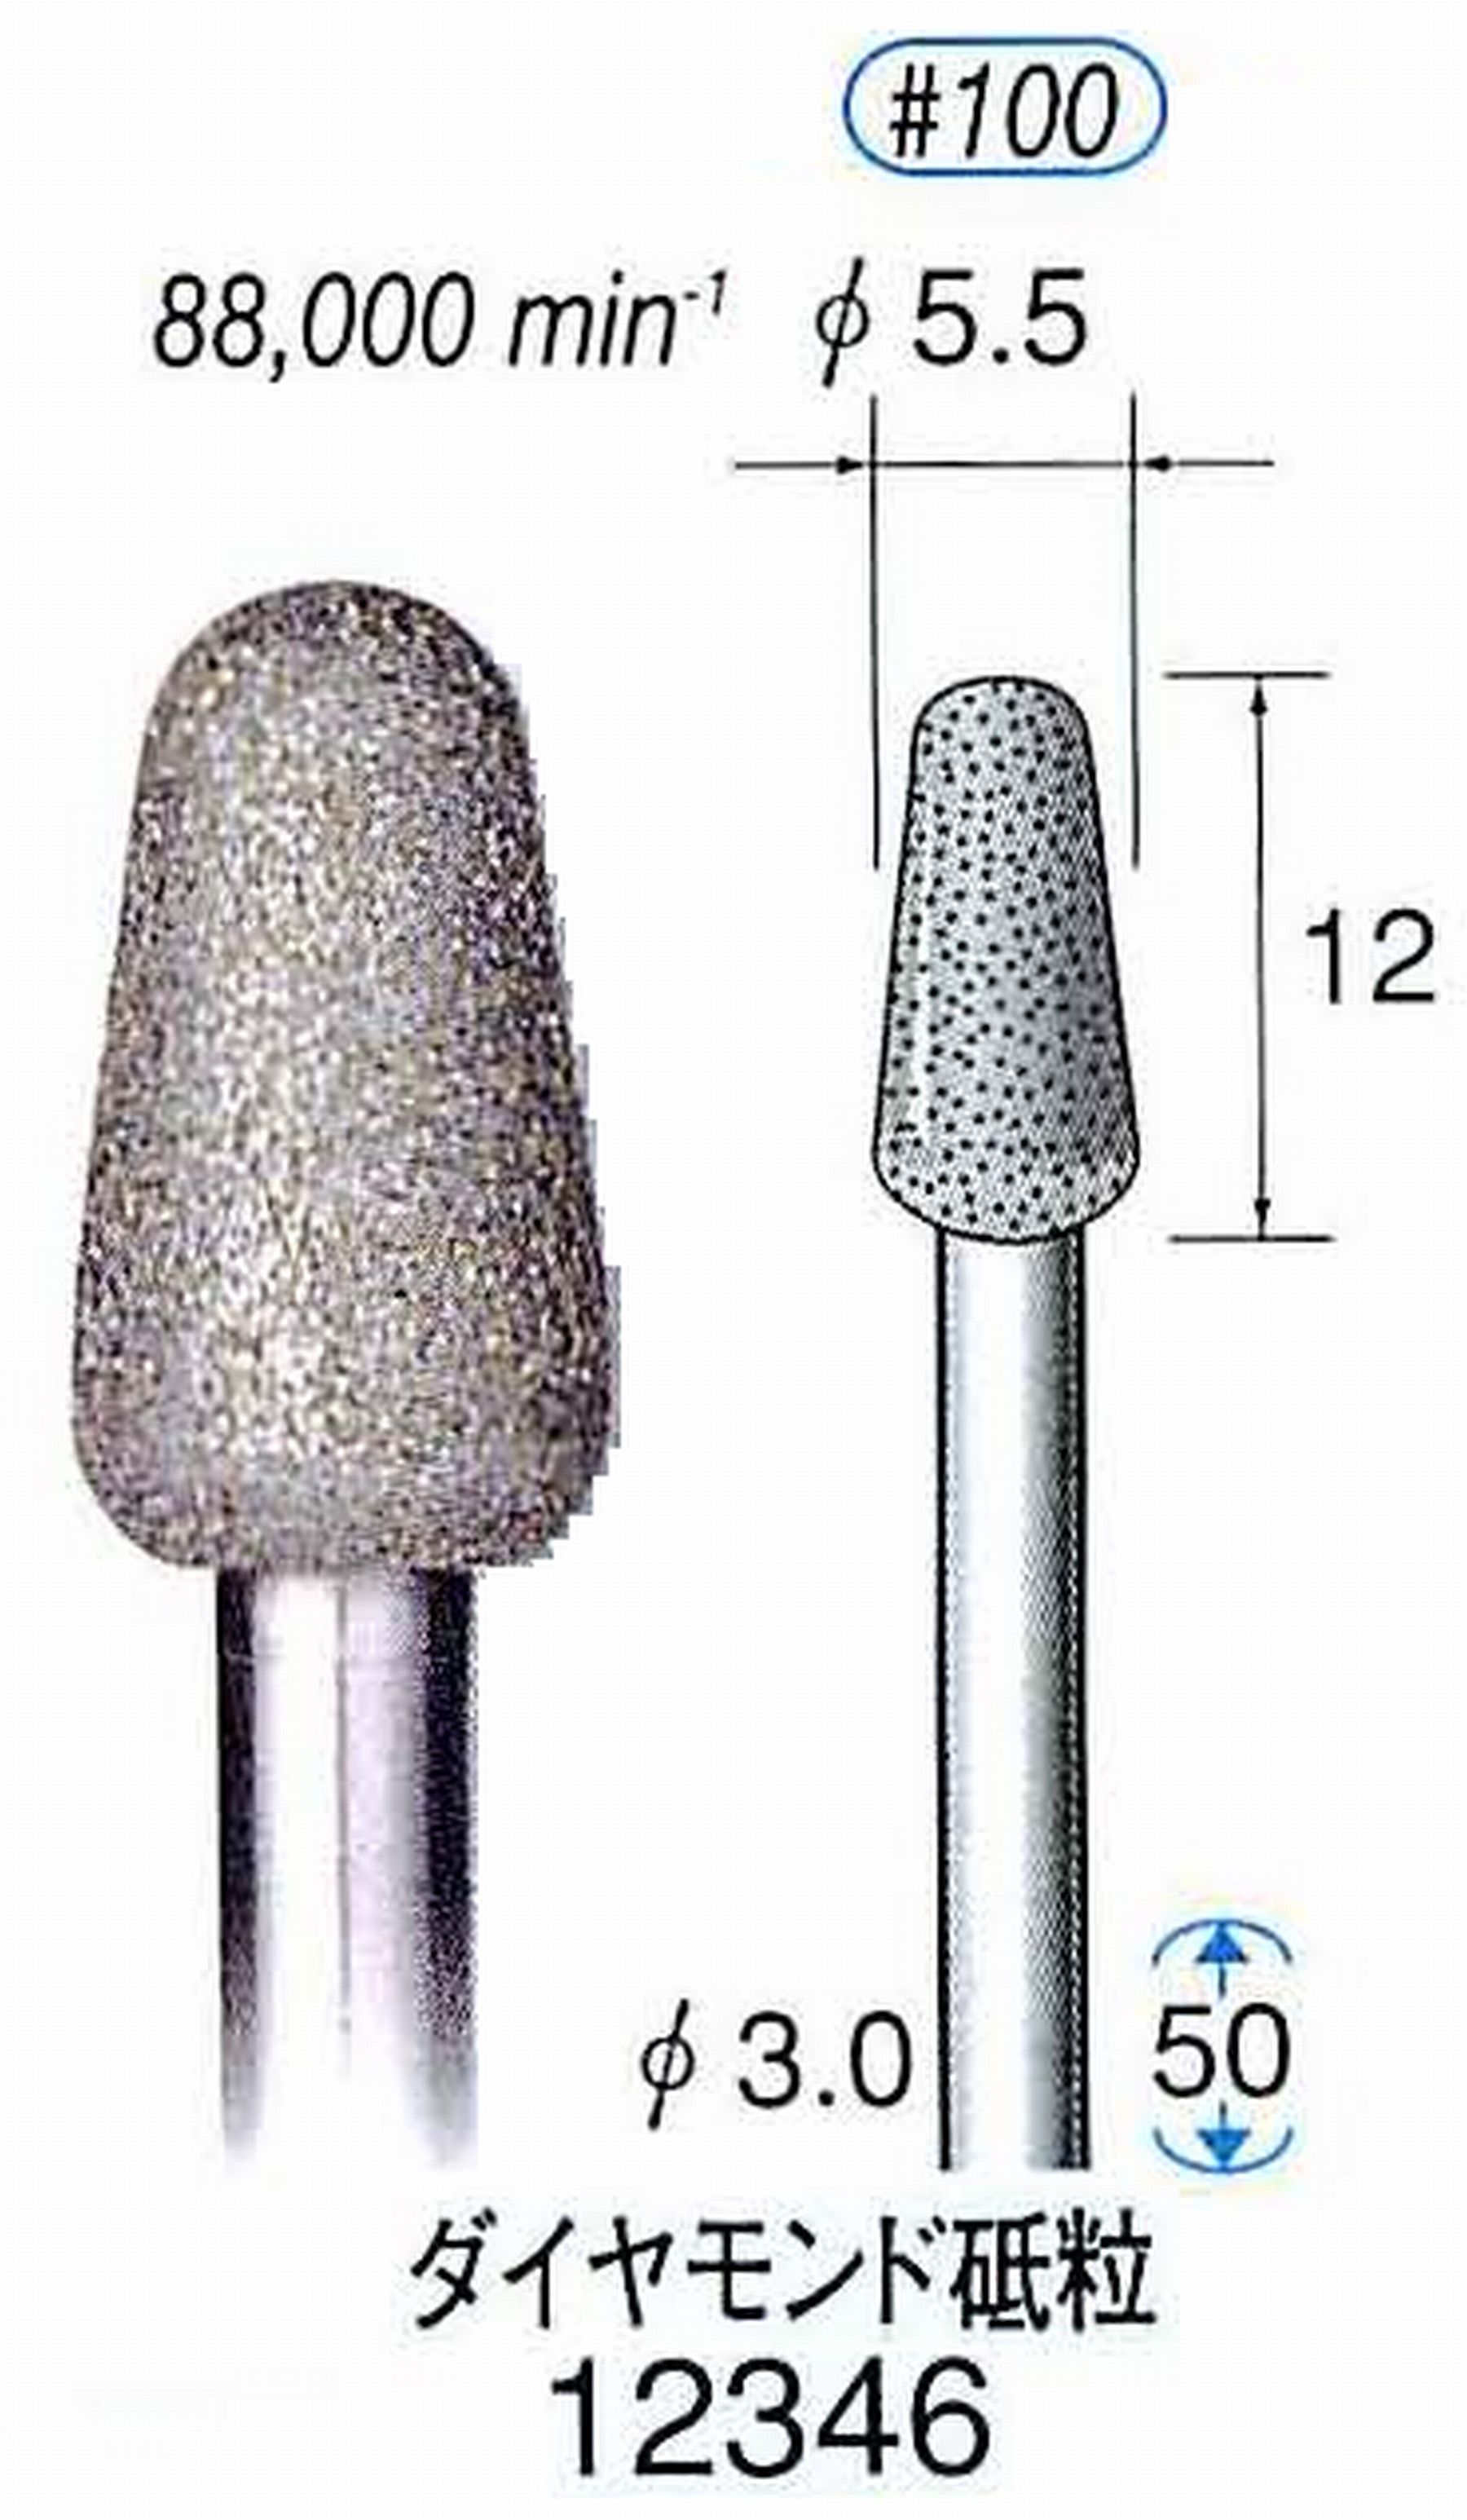 ナカニシ/NAKANISHI 電着ダイヤモンド ダイヤモンド砥粒 軸径(シャンク)φ3.0mm 12346